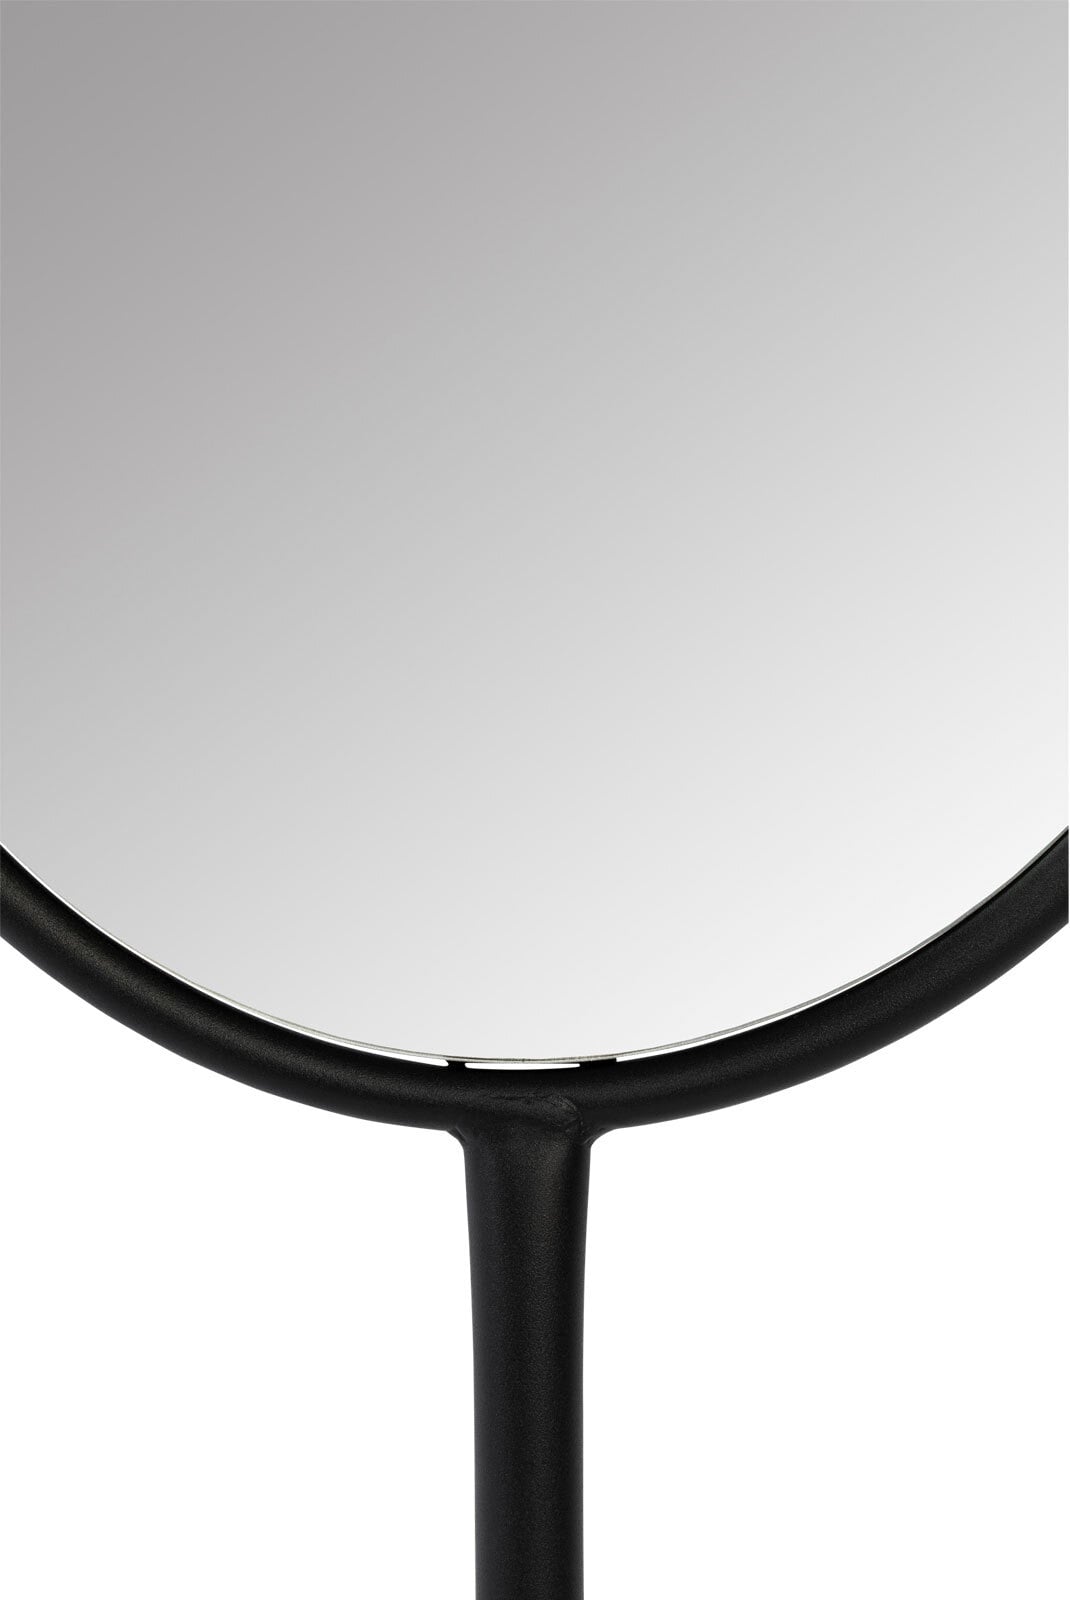 zuiver Spiegel TESS 165 cm Stahlrahmen schwarz